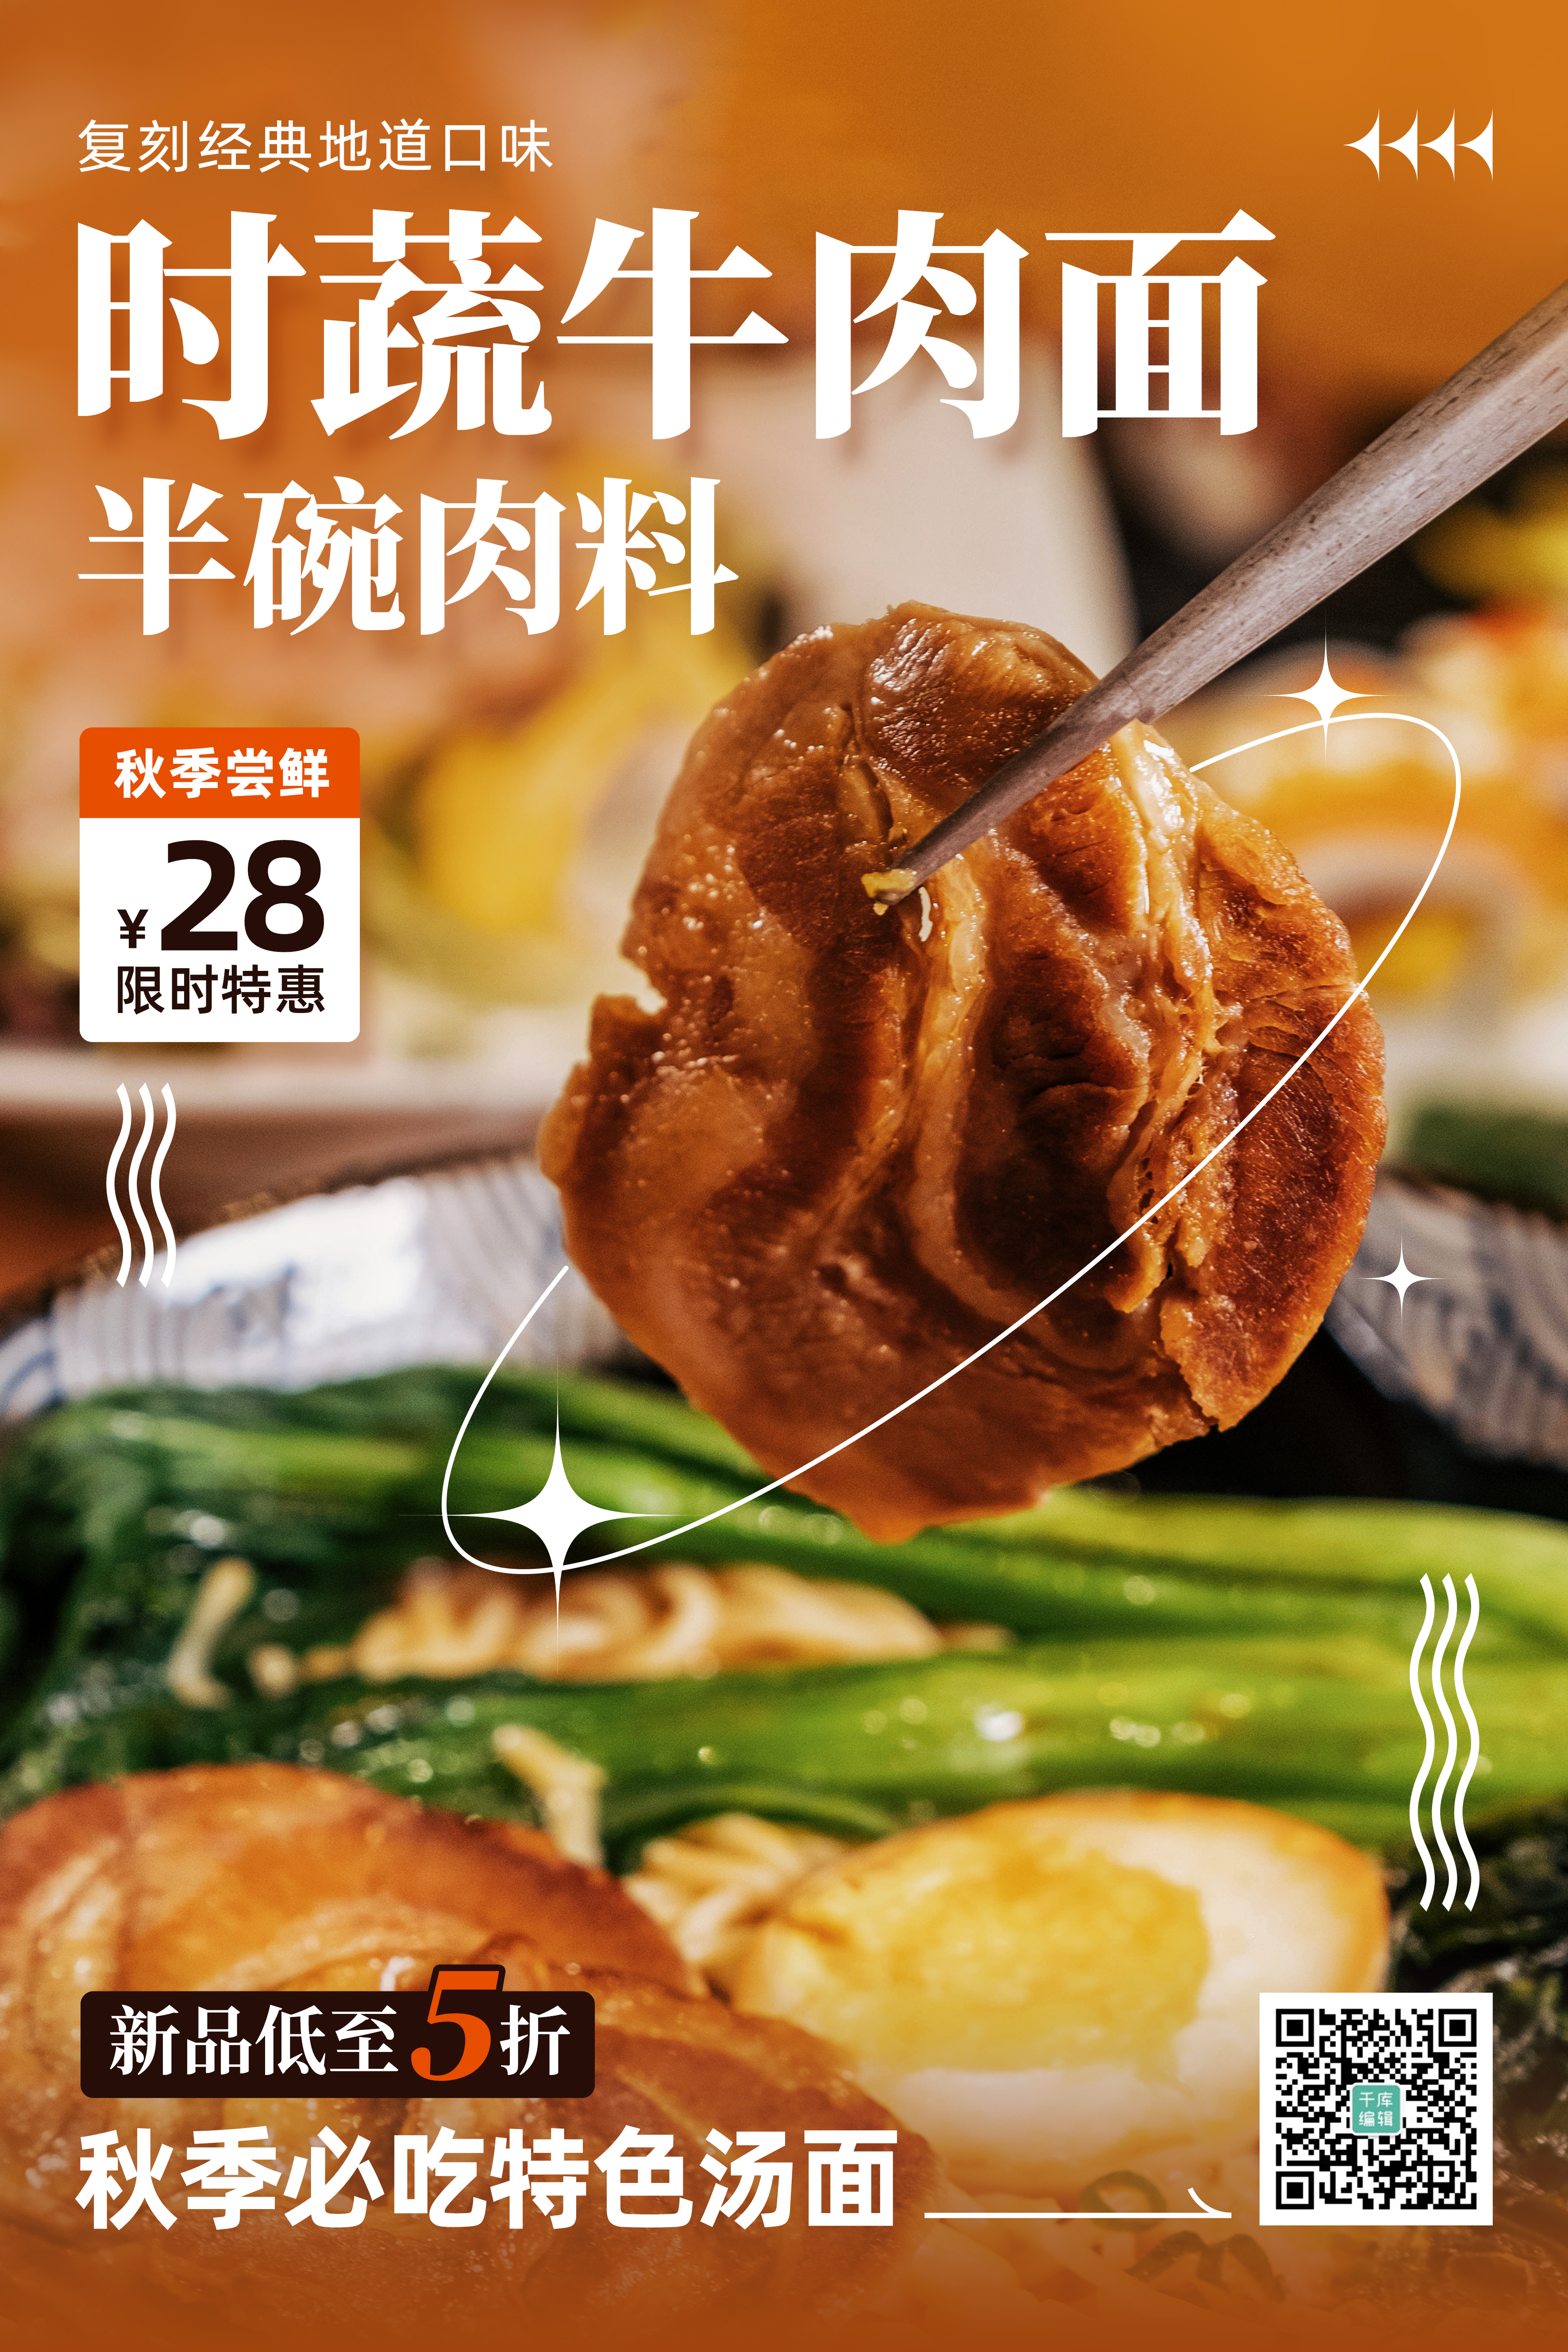 秋冬美食餐饮促销牛肉面橙棕色简约海报图片